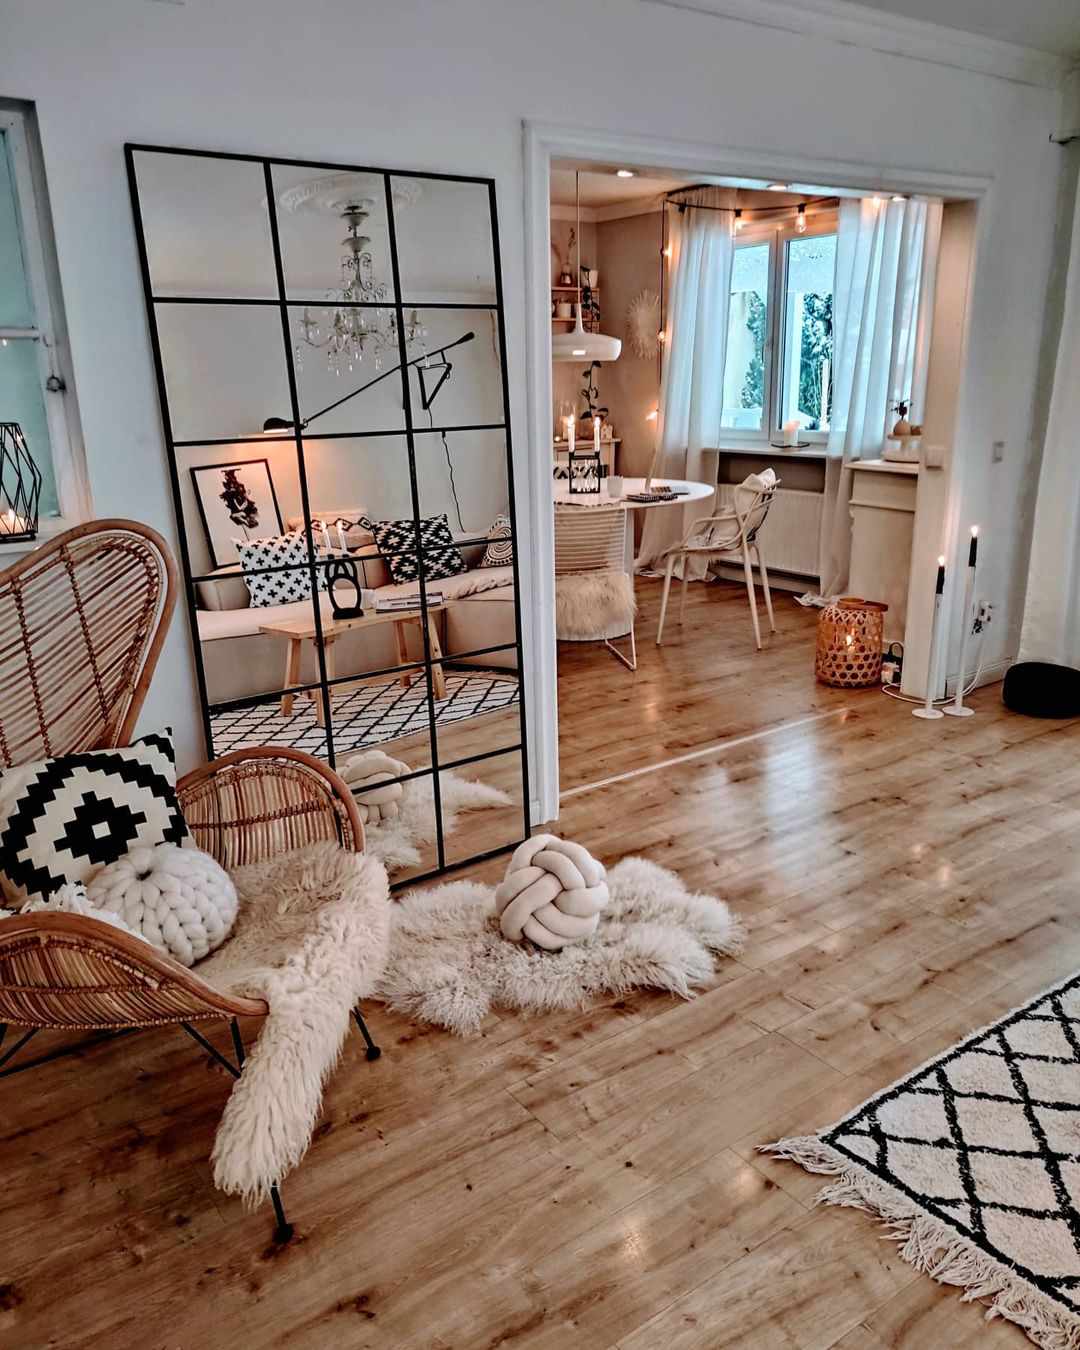 Un coin salon cosy avec un grand miroir DIY, un tapis en fausse fourrure et une chaise en rotin.